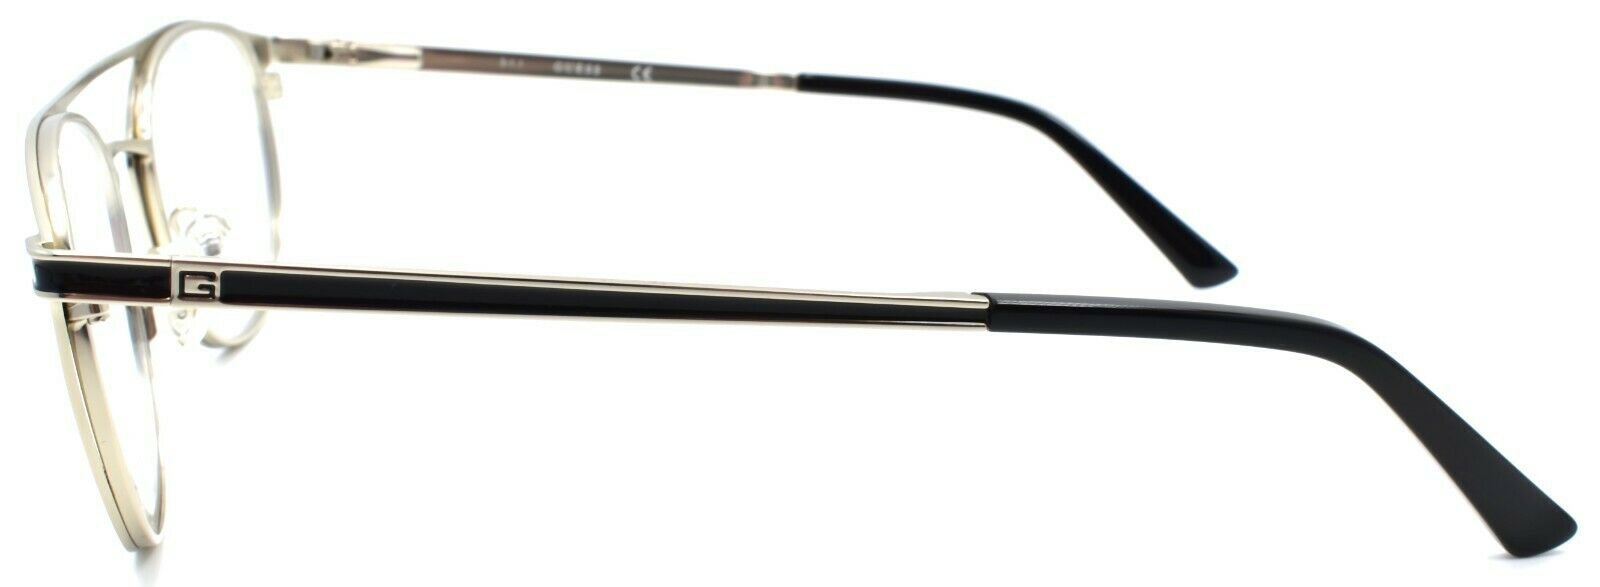 3-GUESS GU1988 010 Men's Eyeglasses Frames Aviator 50-21-145 Light Nickeltin-889214112712-IKSpecs